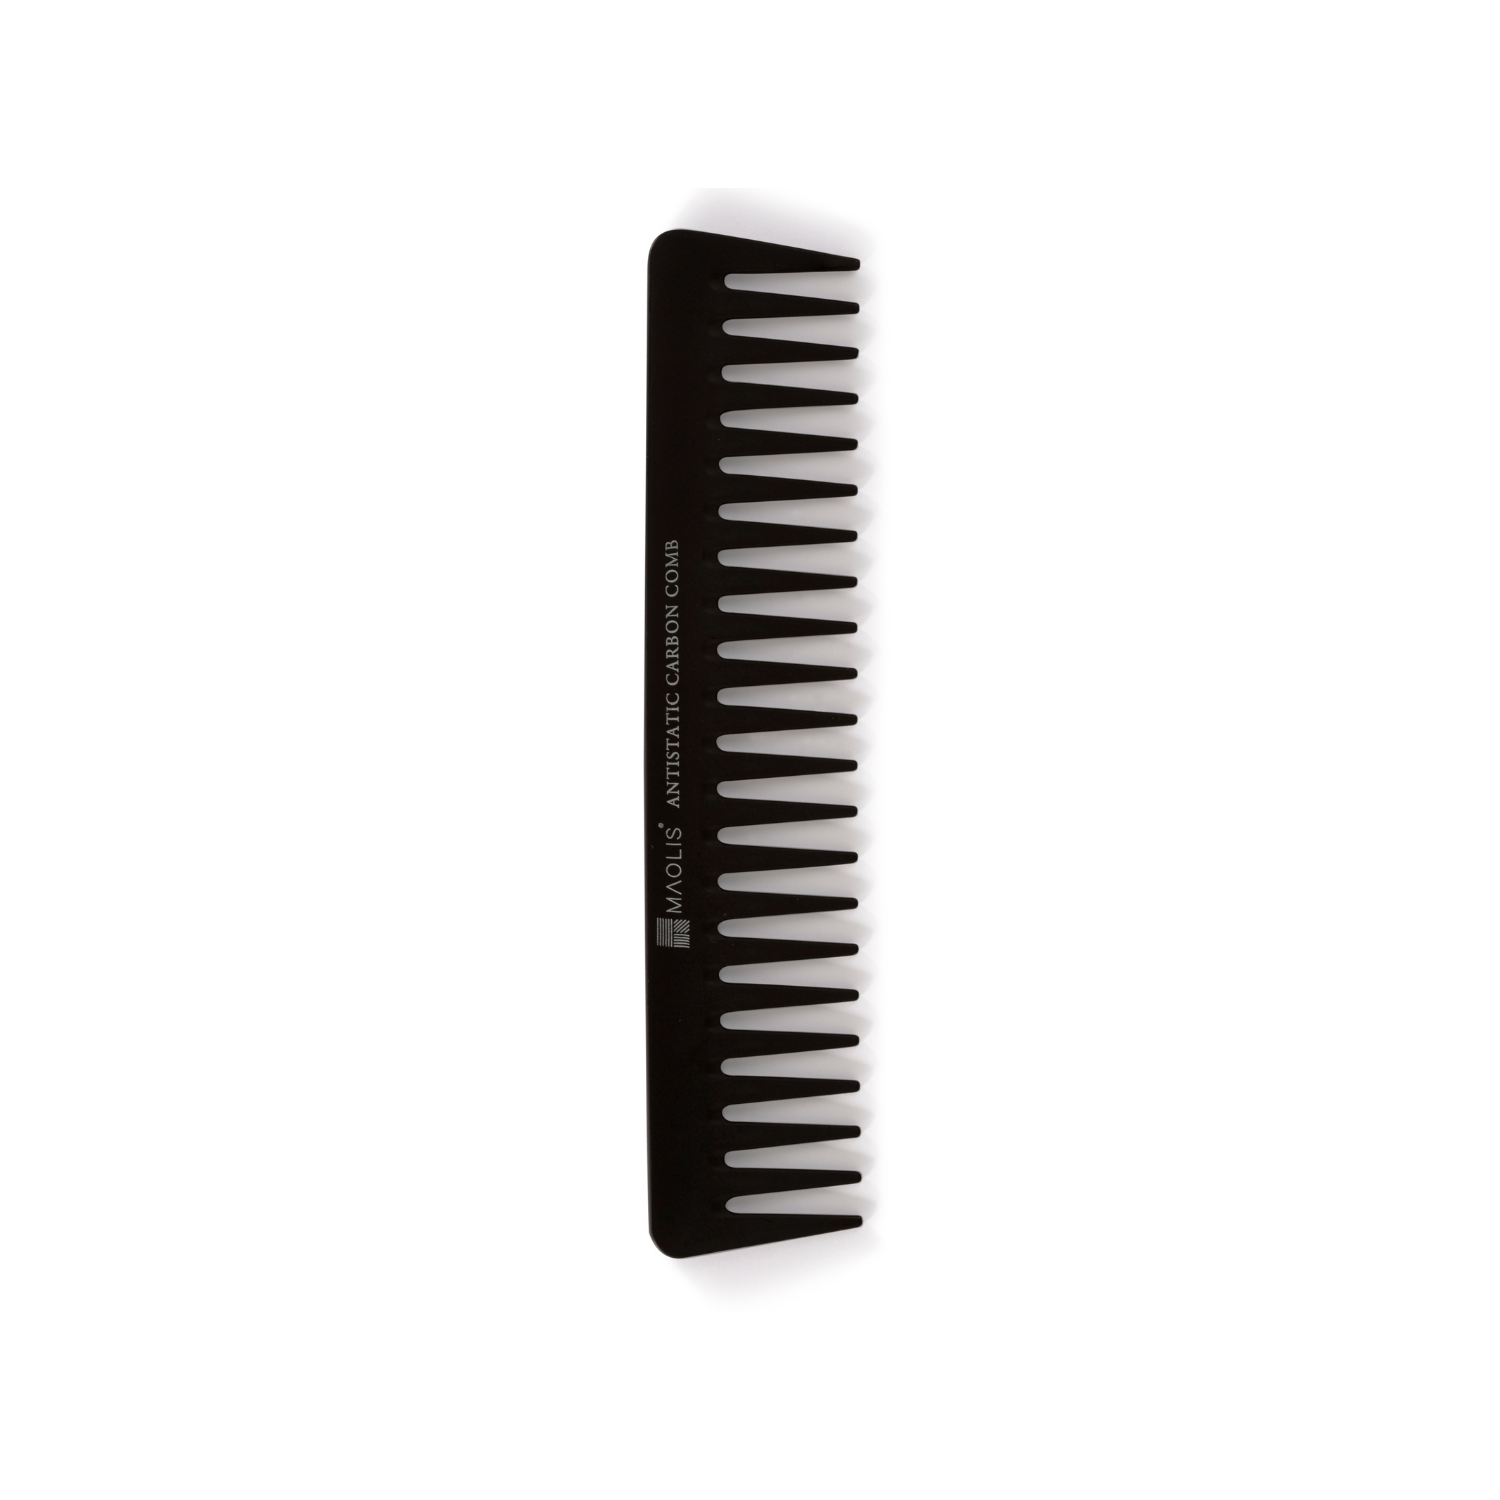 Carbon-pro detangling comb